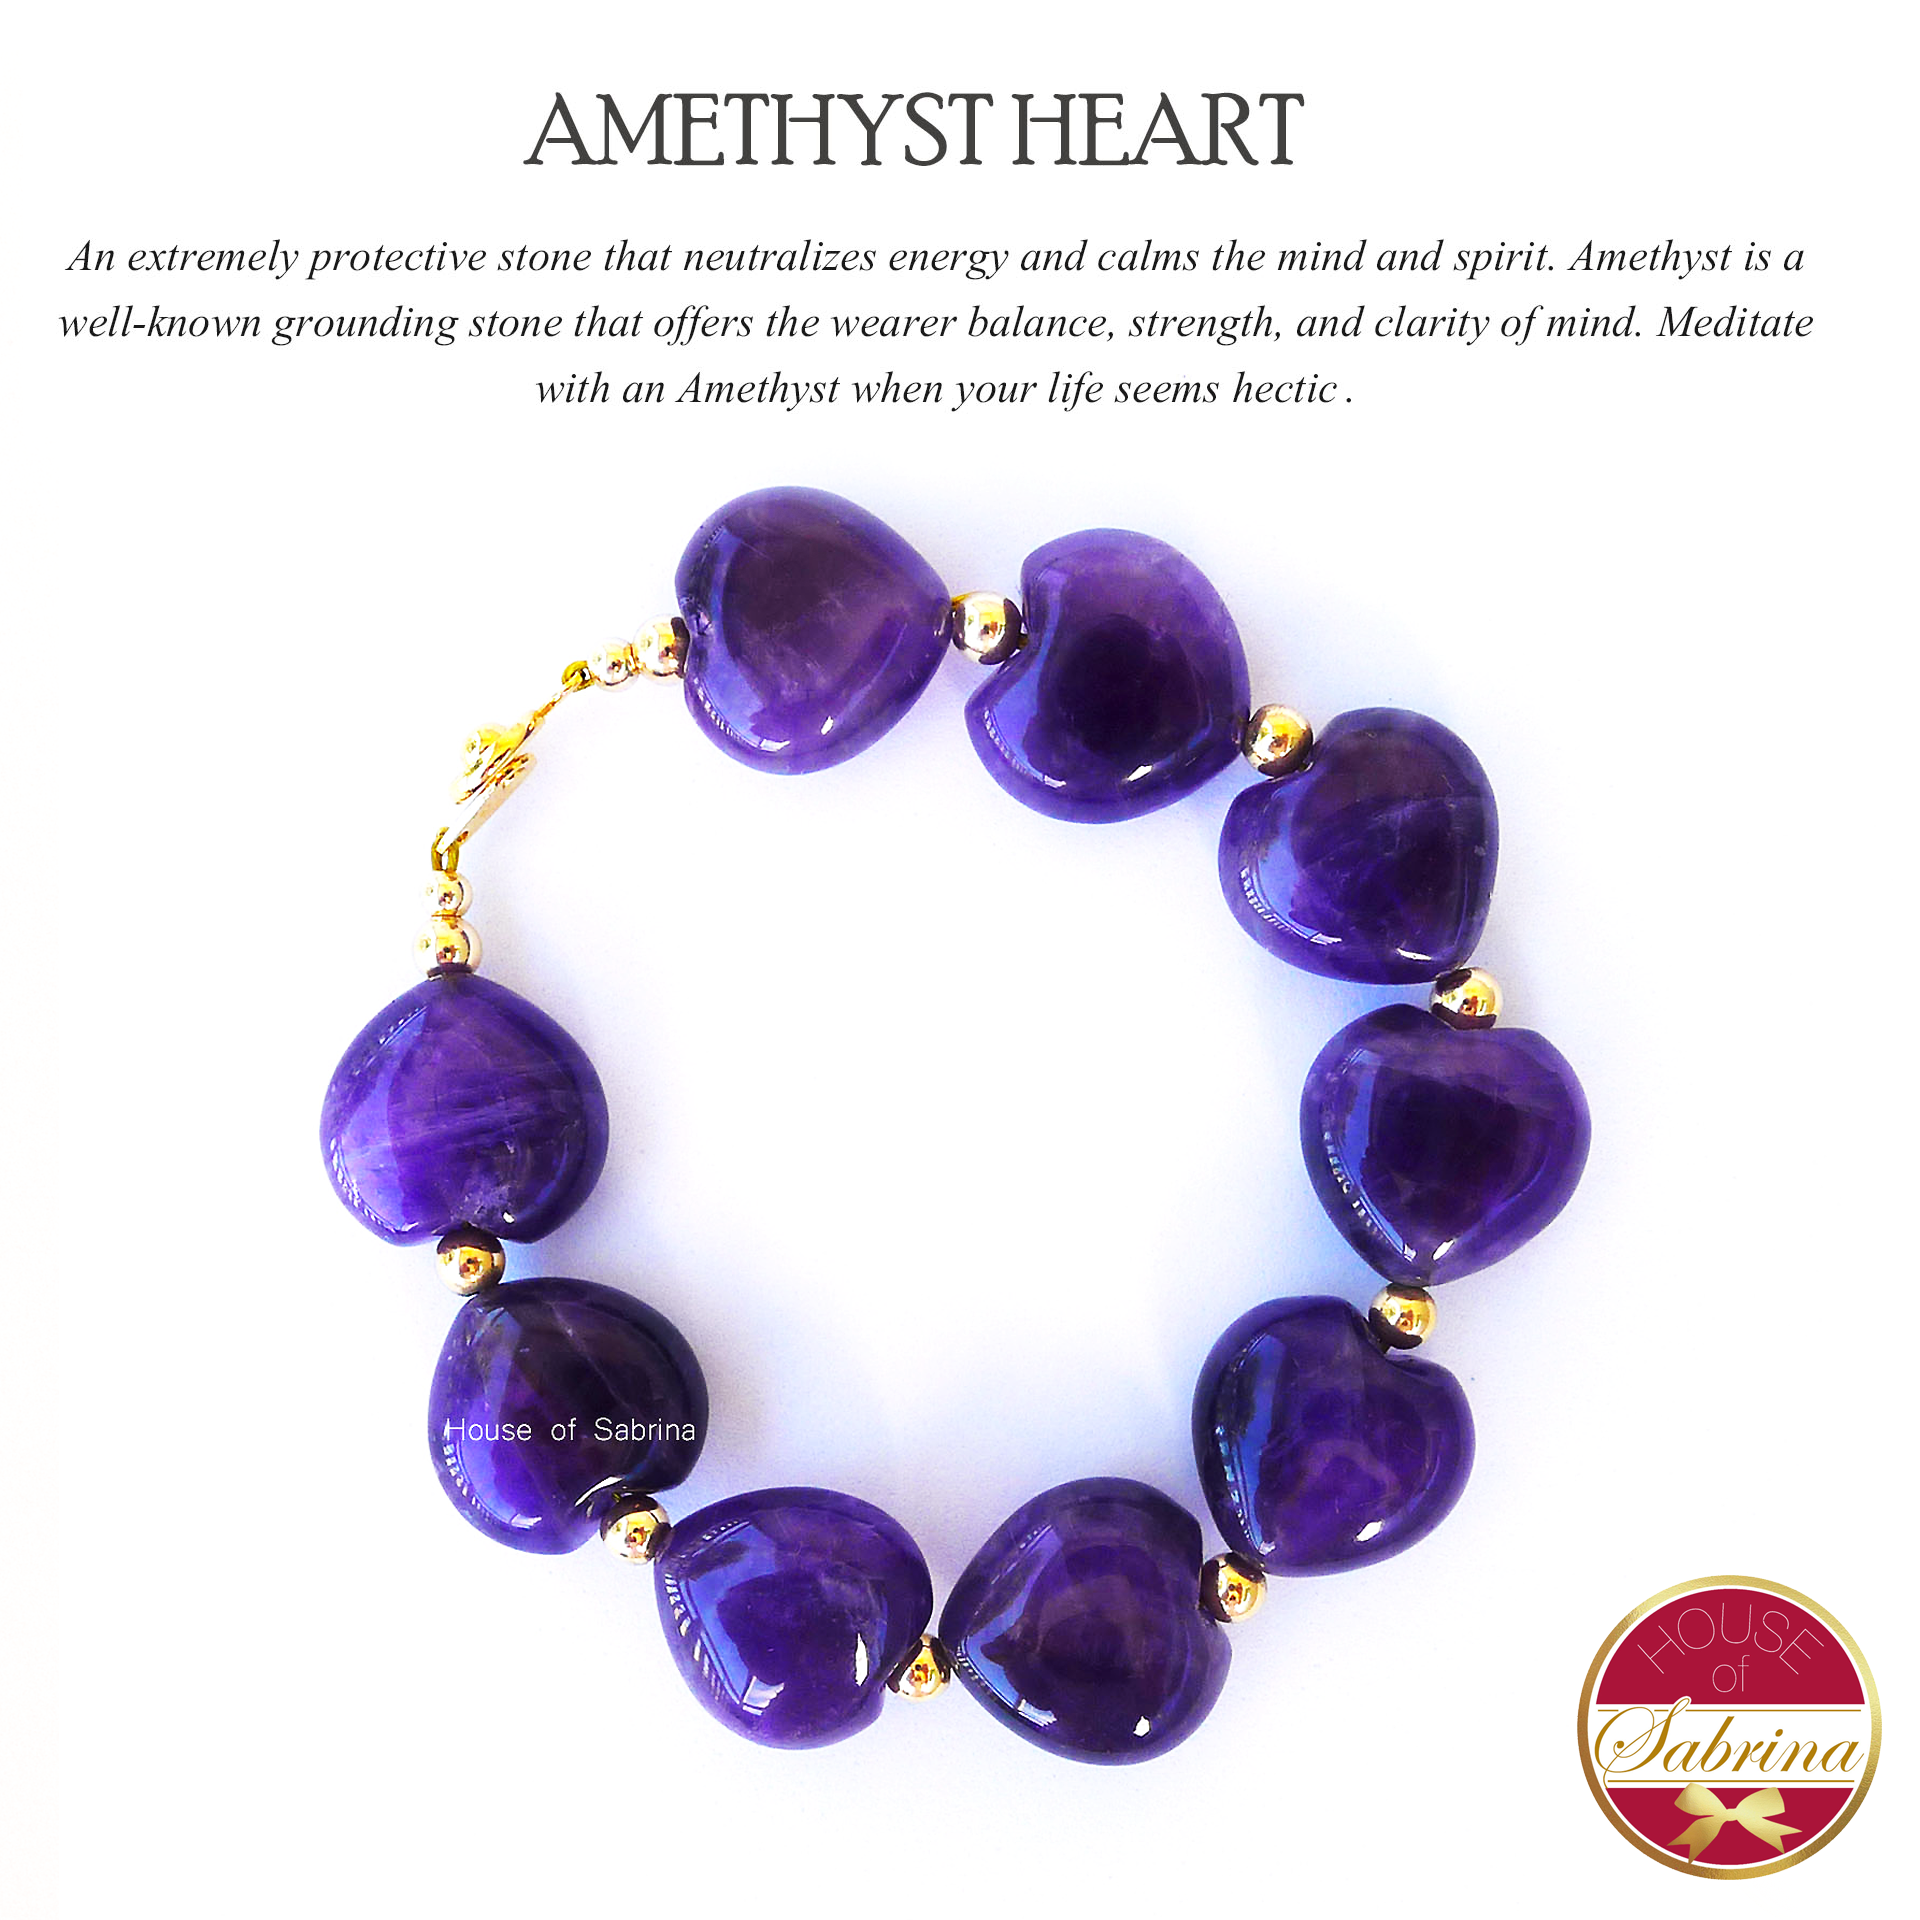 Amethyst Heart Power Gemstone Bracelet